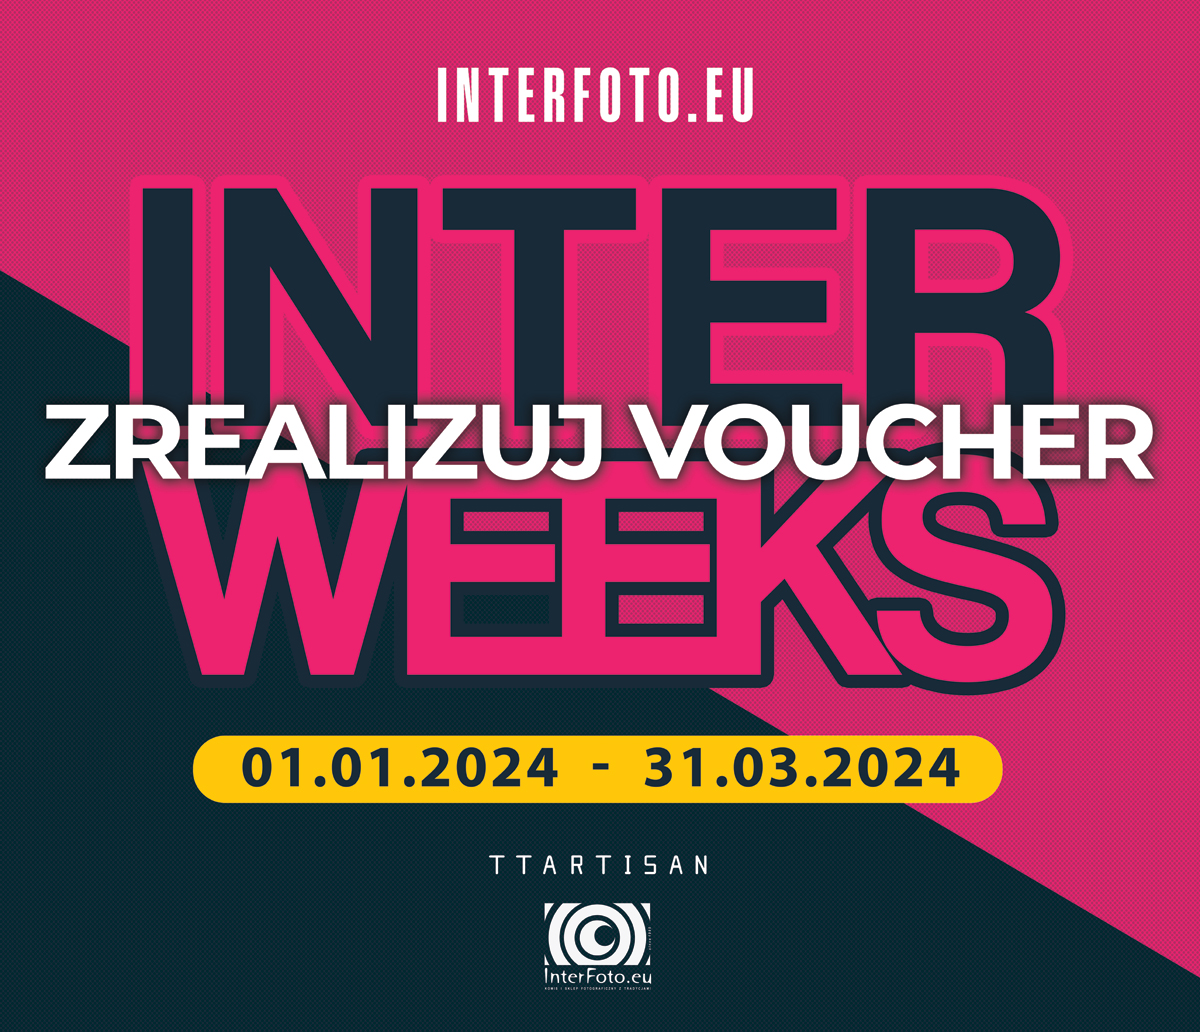 Do końca akcji InterWeeks został tylko miesiąc! Vouchery zrealizujesz do 31 marca 2024.